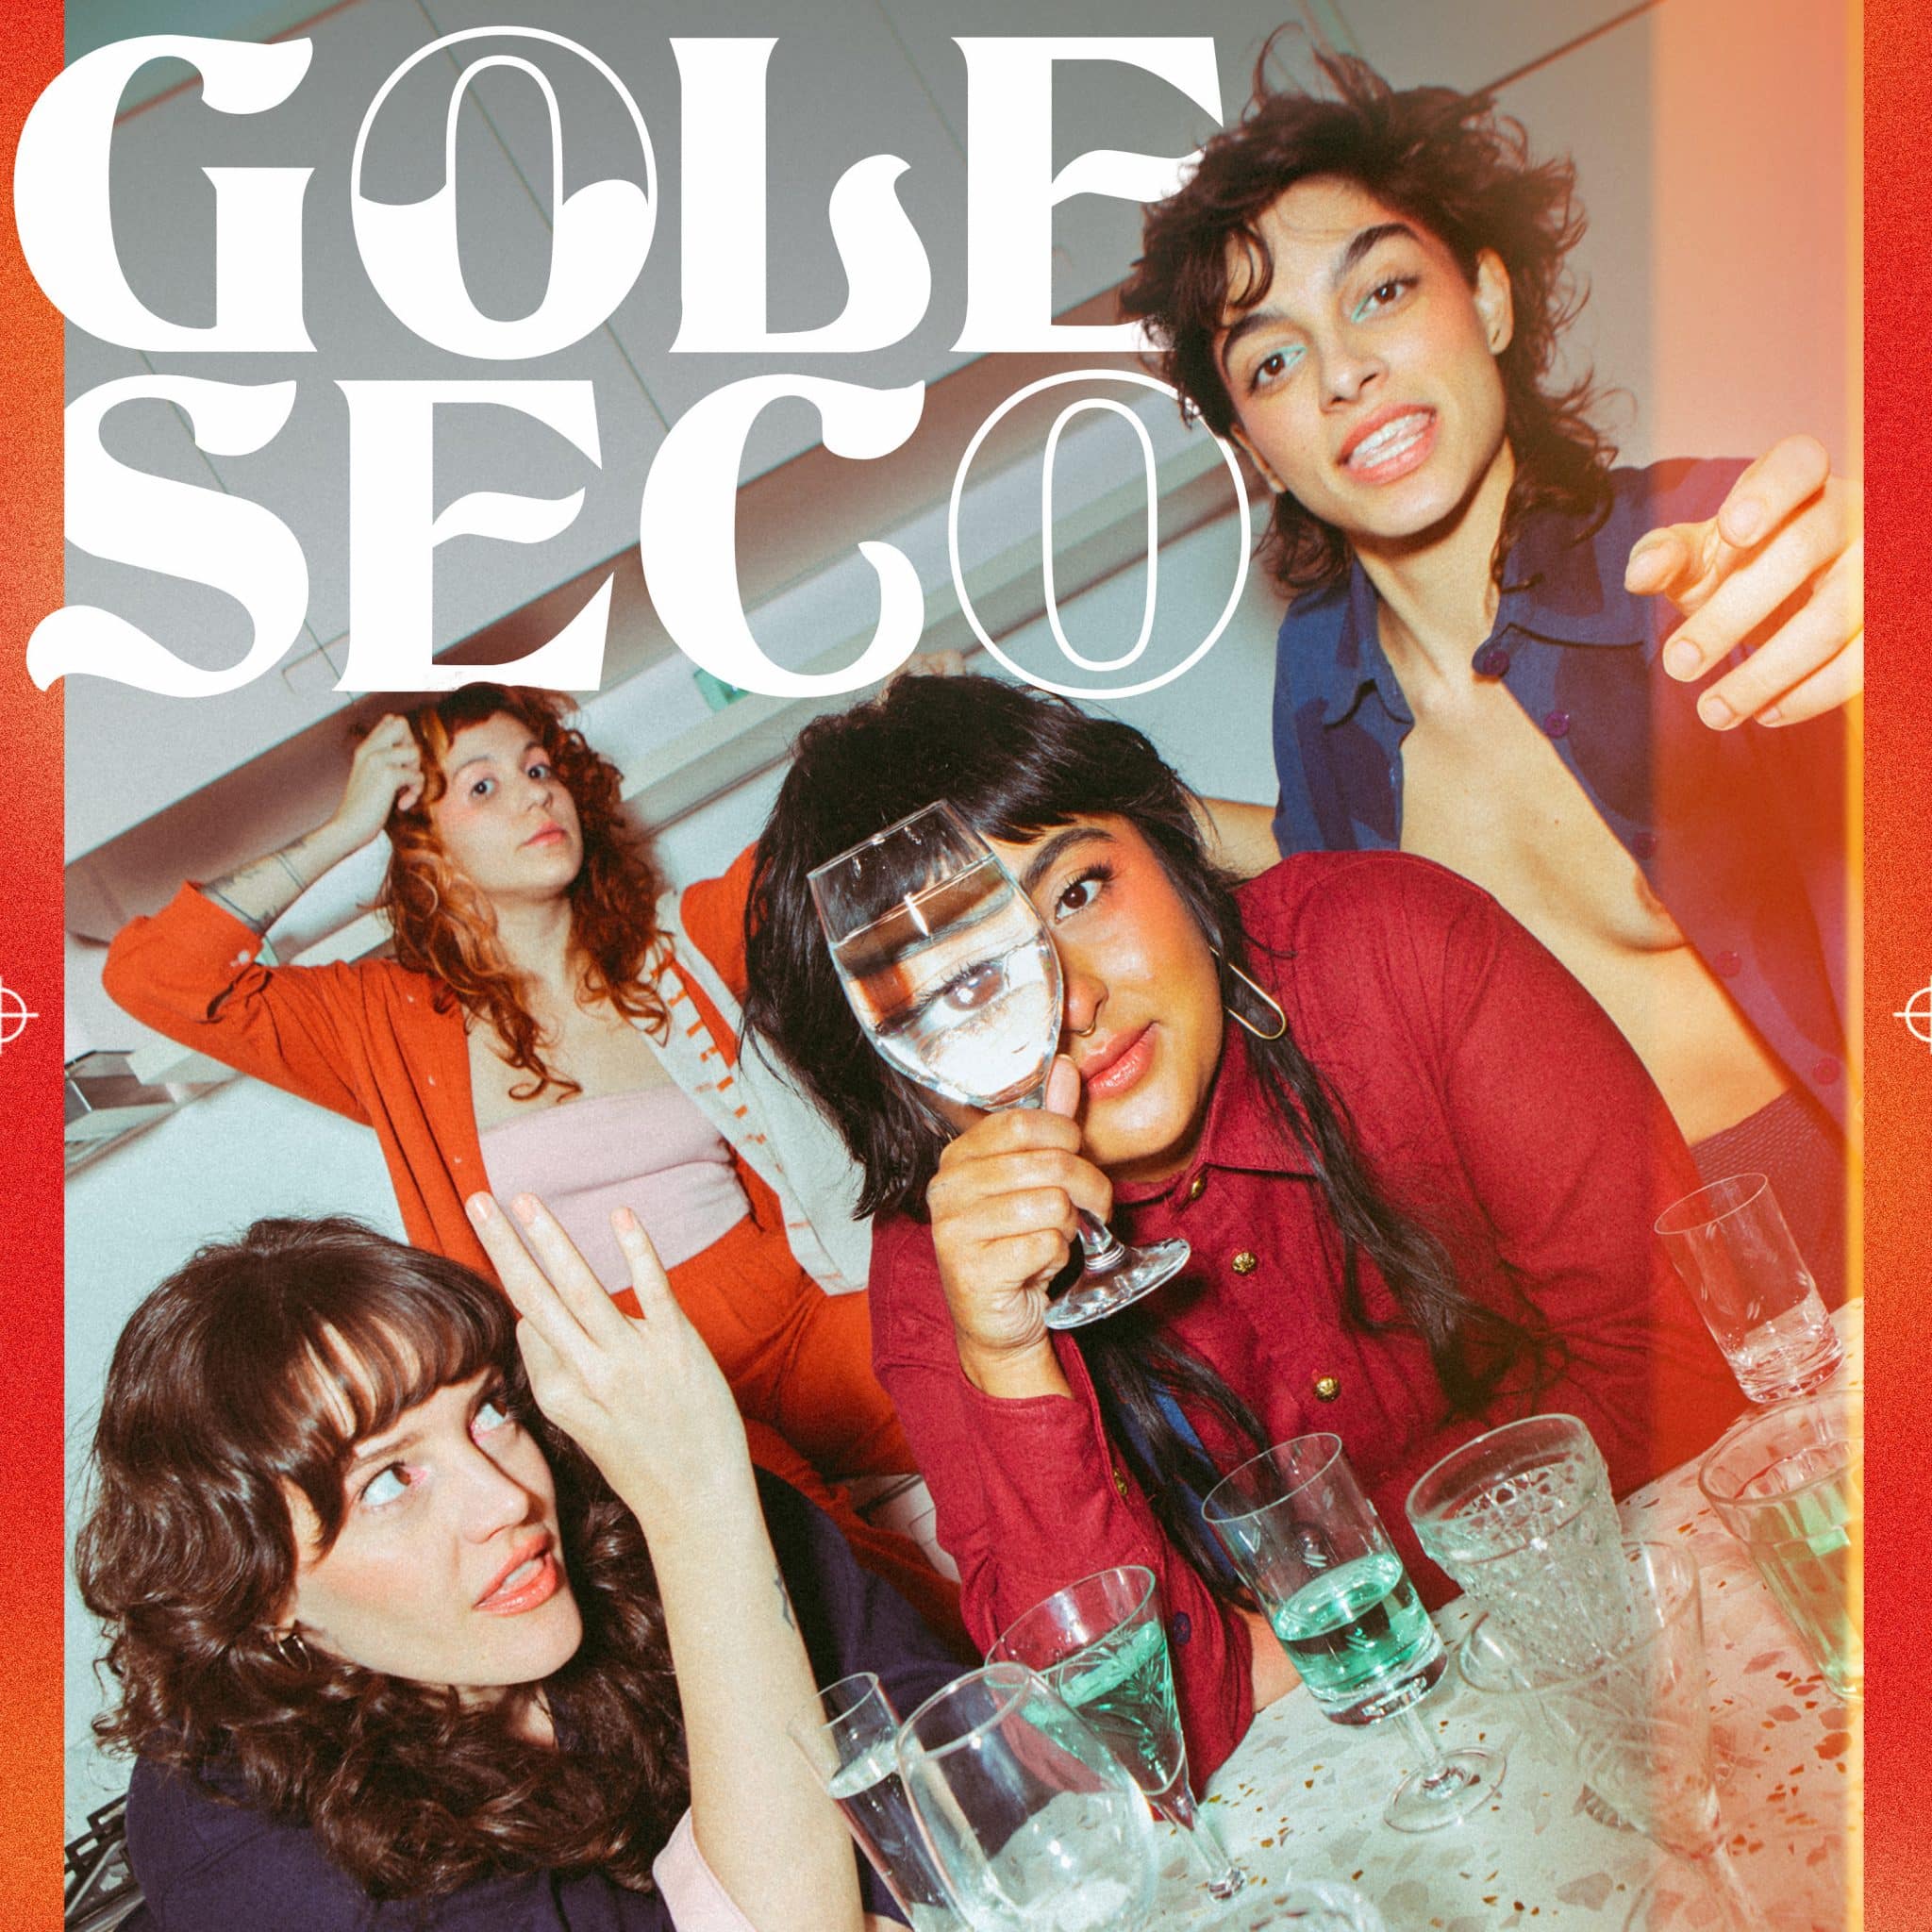 revistaprosaversoearte.com - Quarteto feminino Gole Seco estreia álbum 'Lado A / Lado B'